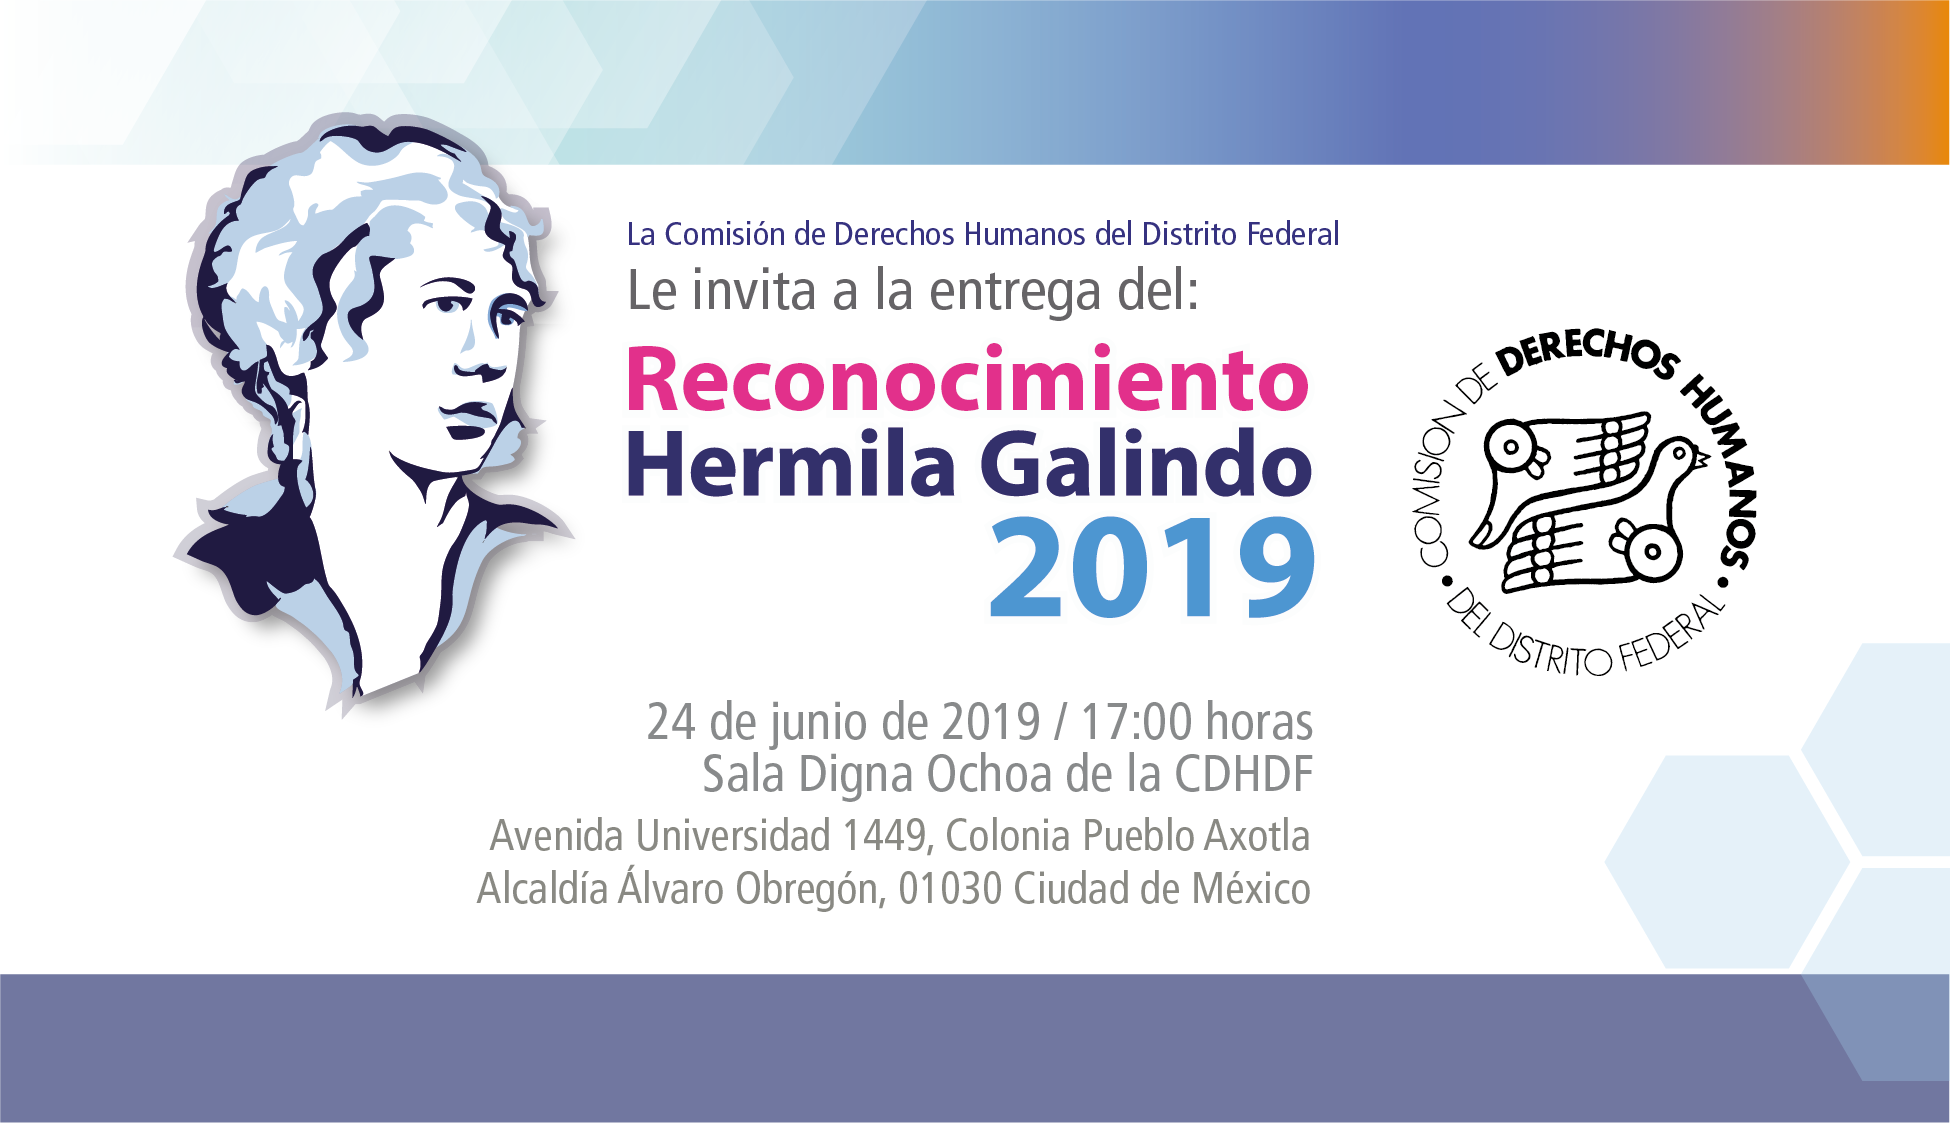 Ceremonia de entrega del Reconocimiento “Hermila Galindo” 2019. @ CDHDF